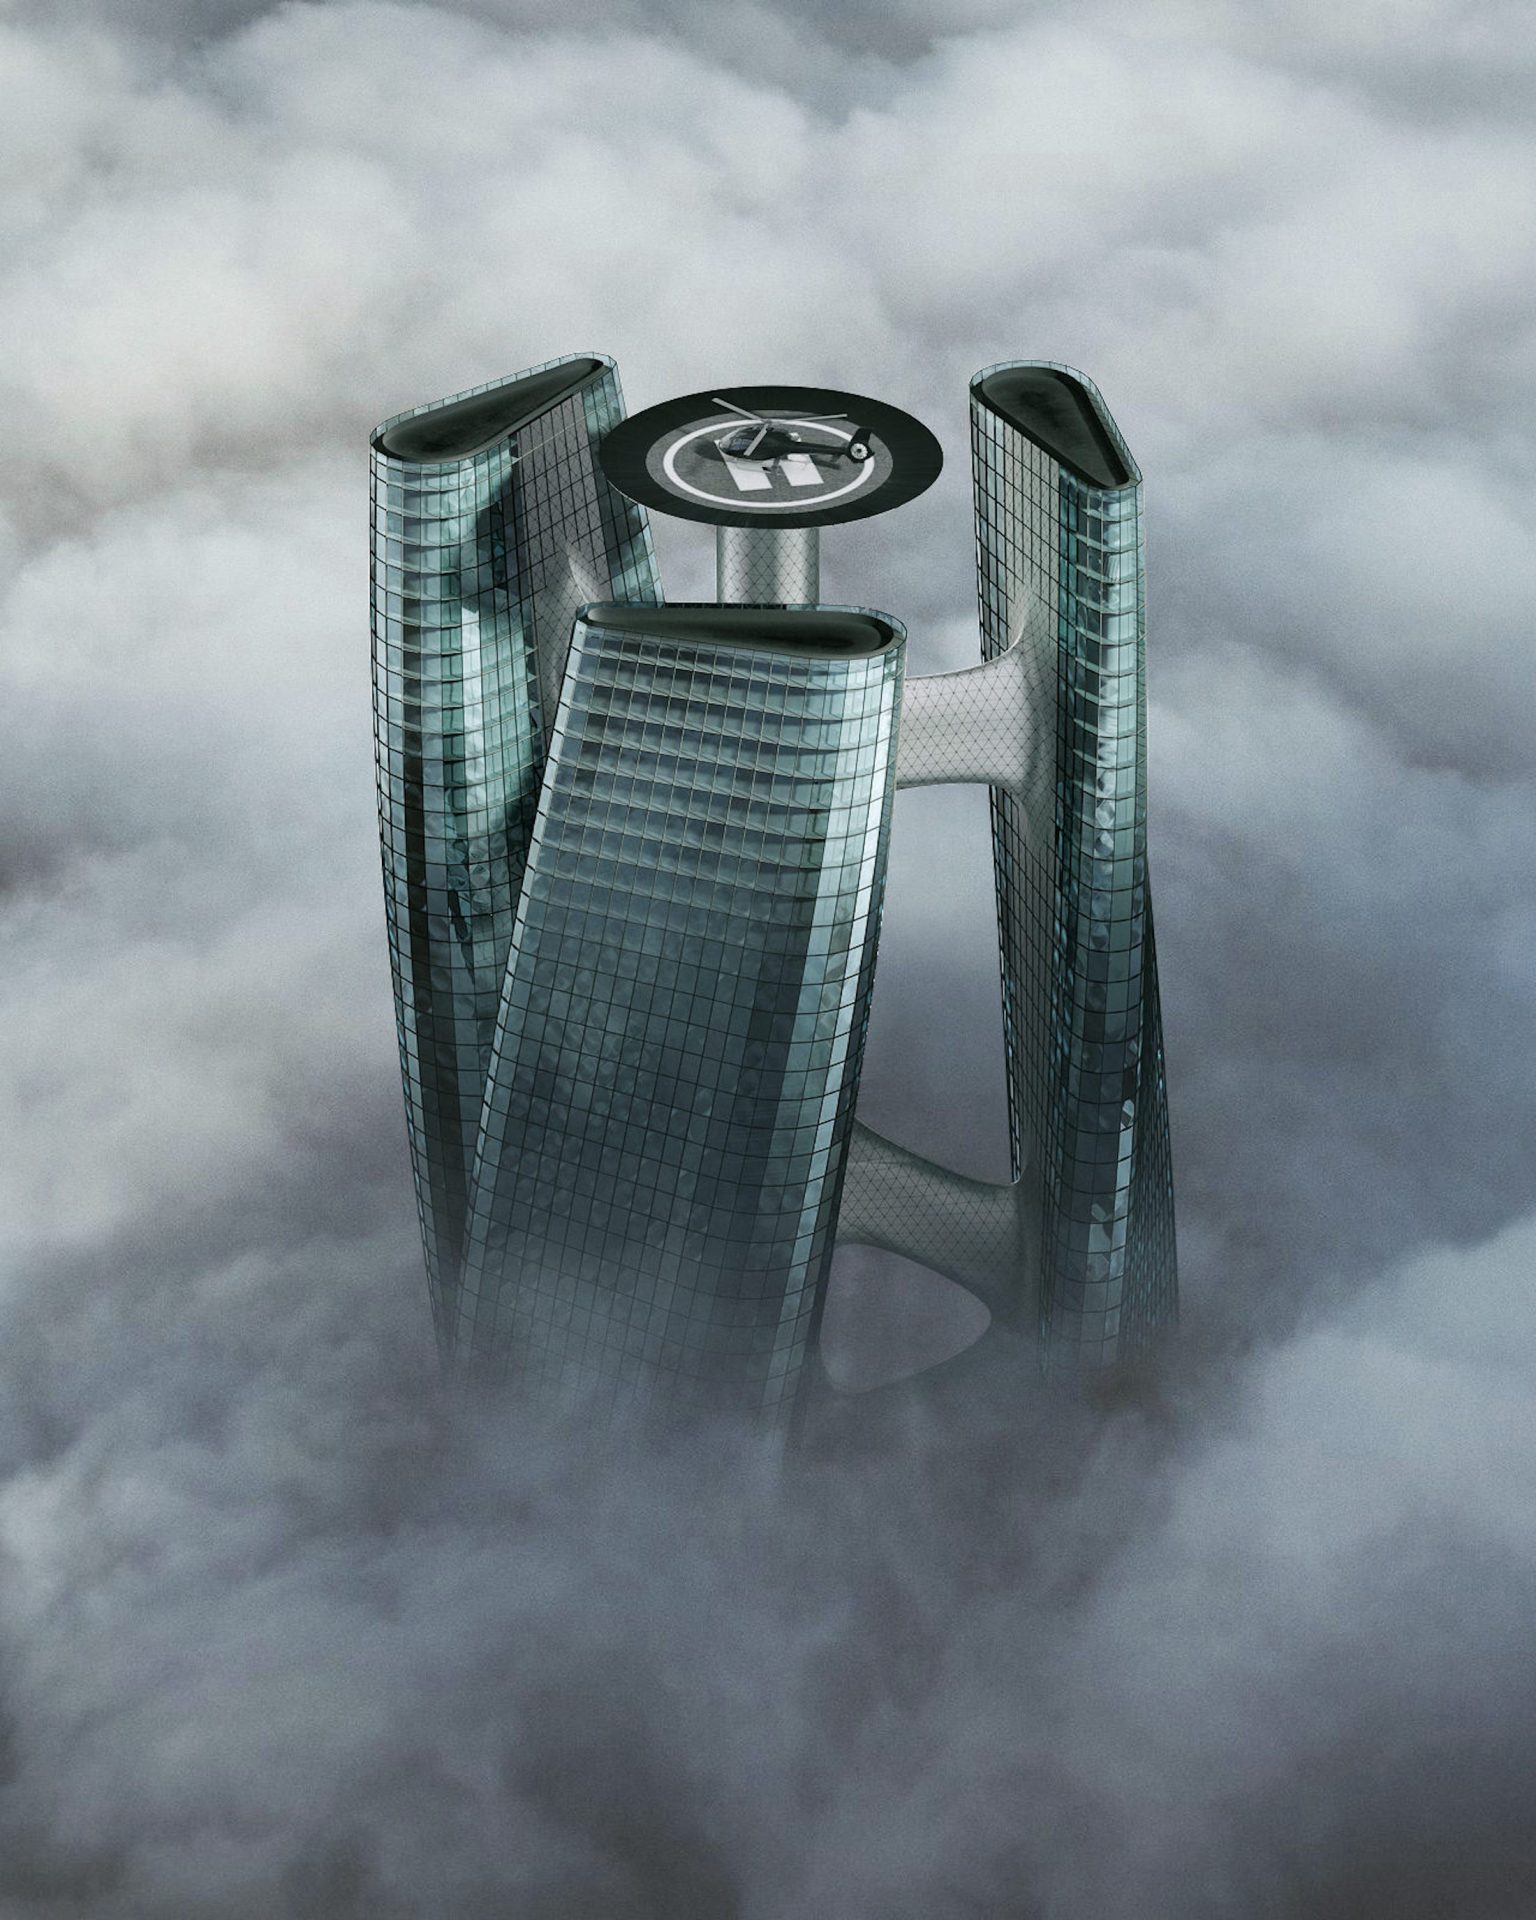 La Squall Tower tourne sur elle-même comme une éolienne pour produire de l'électricité